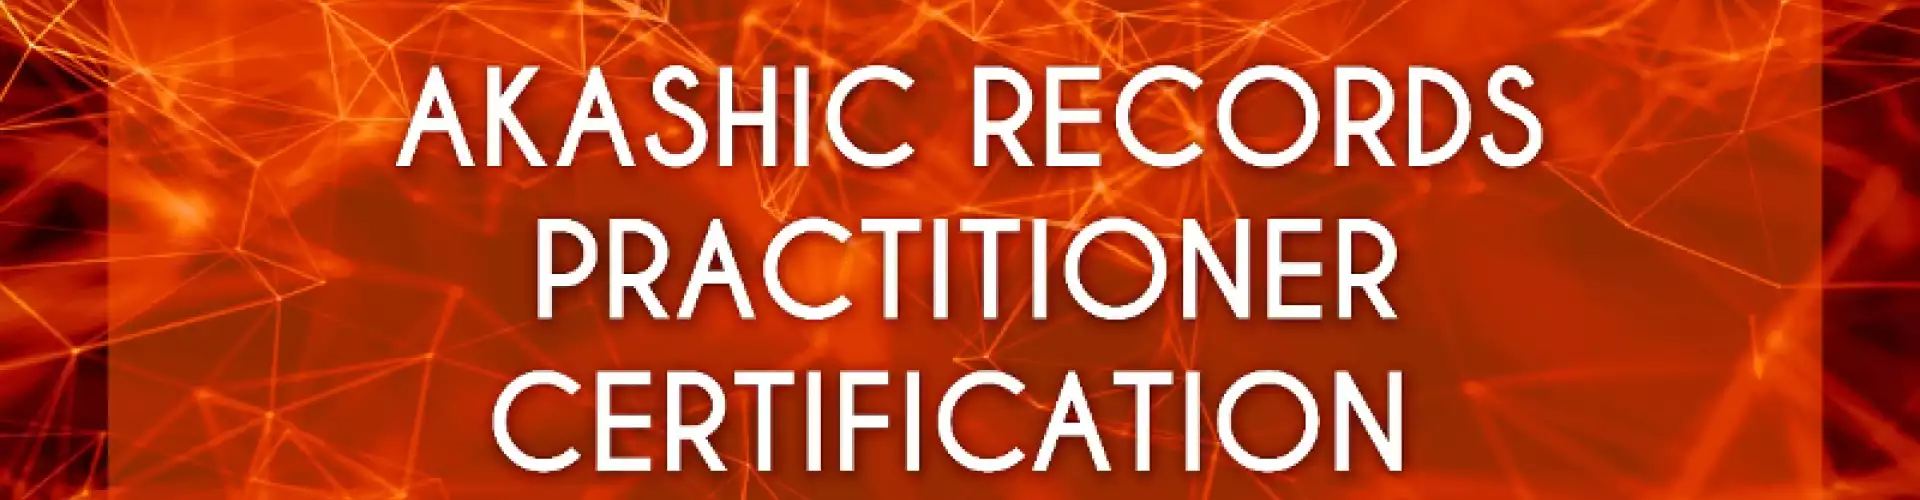 Certificación de practicantes de registros akáshicos